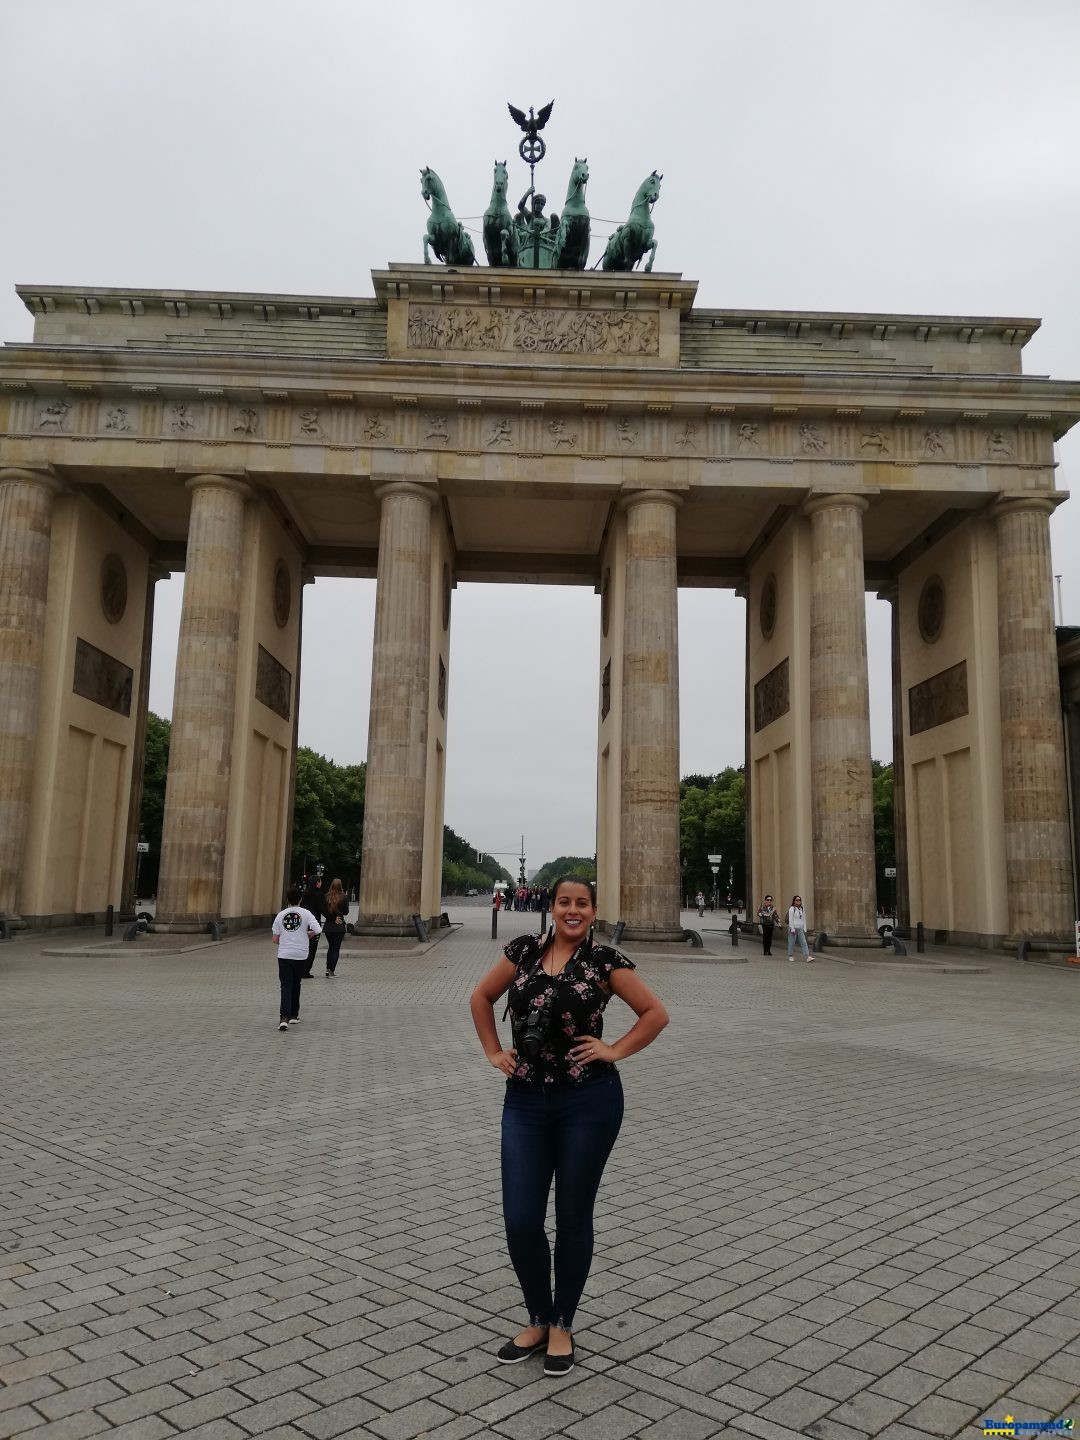 La imponente Puerta de Brandenburgo